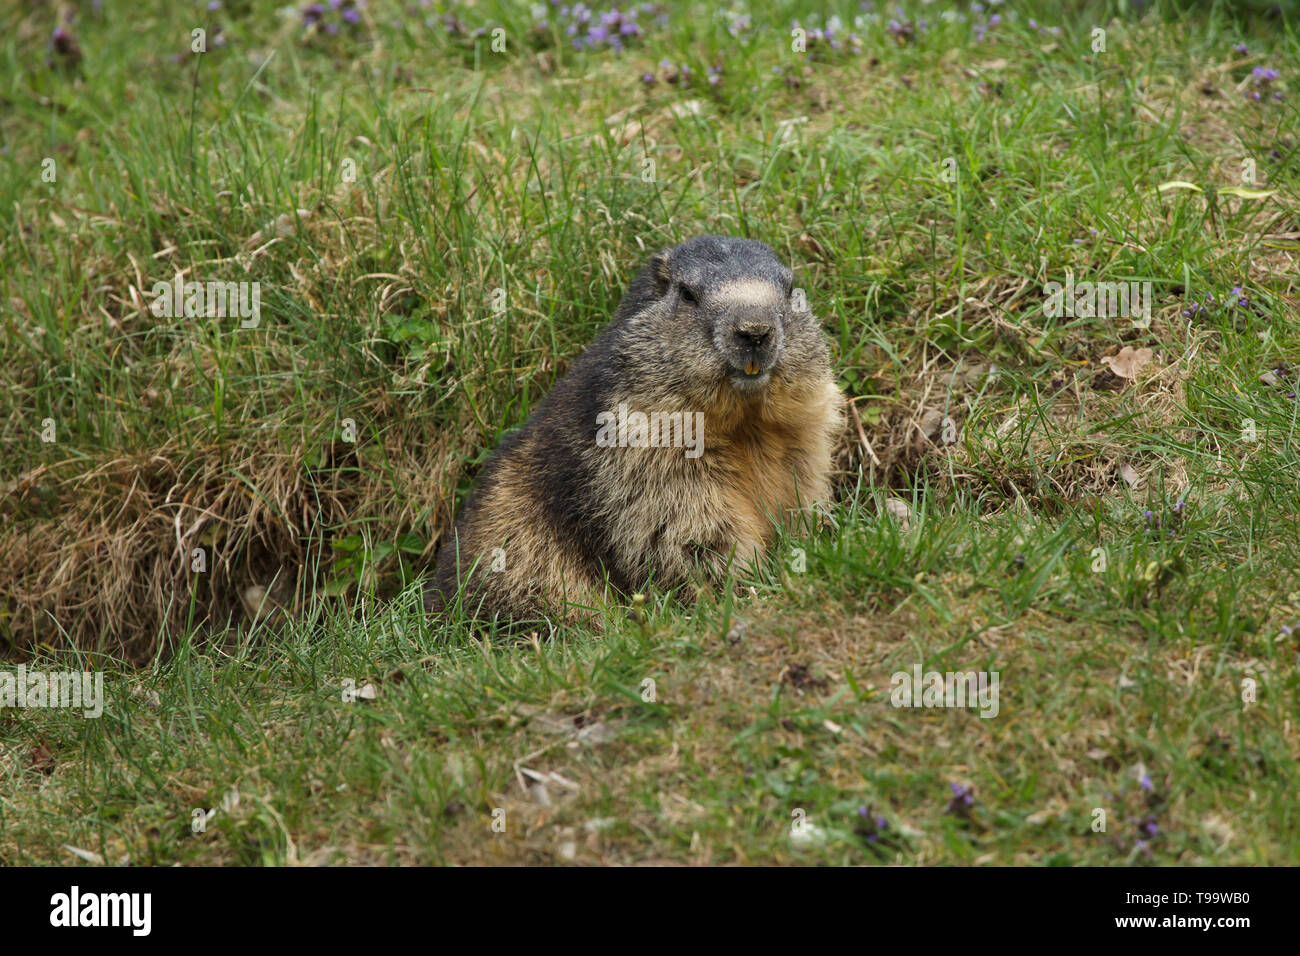 Alpine marmot (Marmota marmota). Wildlife animal. Stock Photo